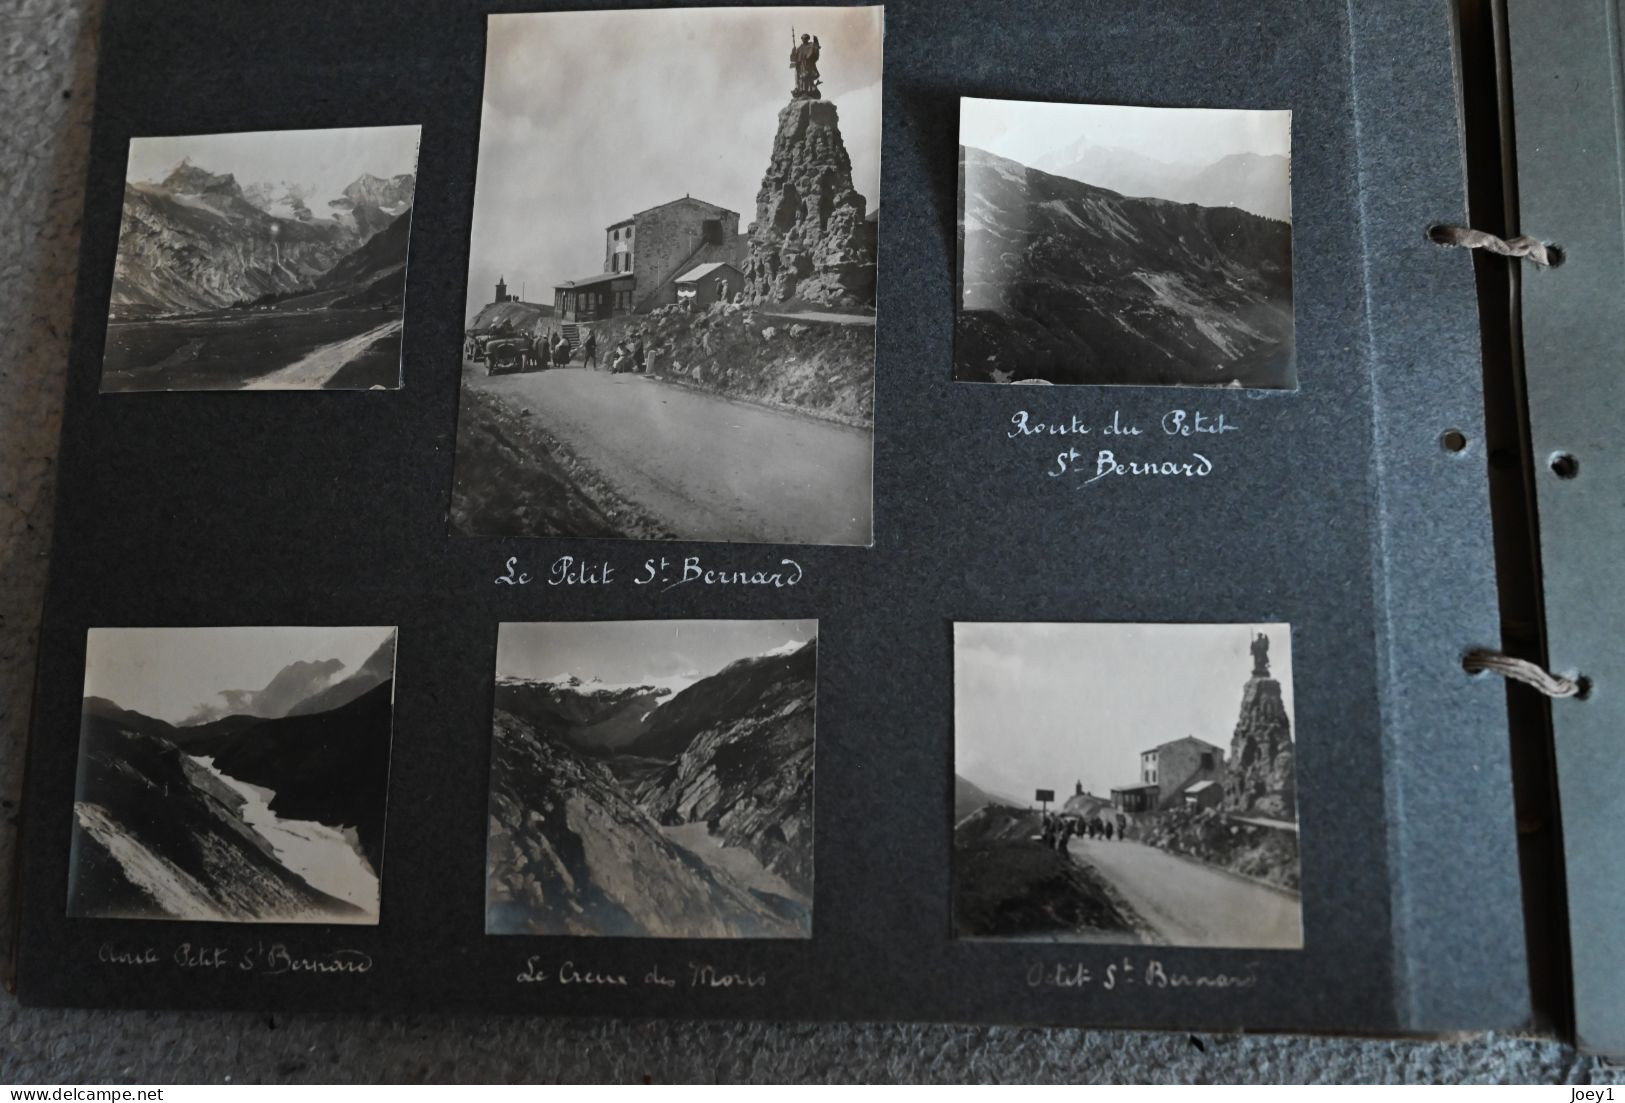 Album Photos années 20 Montagnes Alpes Moutiers Val D isère st marcel la vanoise val joli..italie,Venise Magnifique